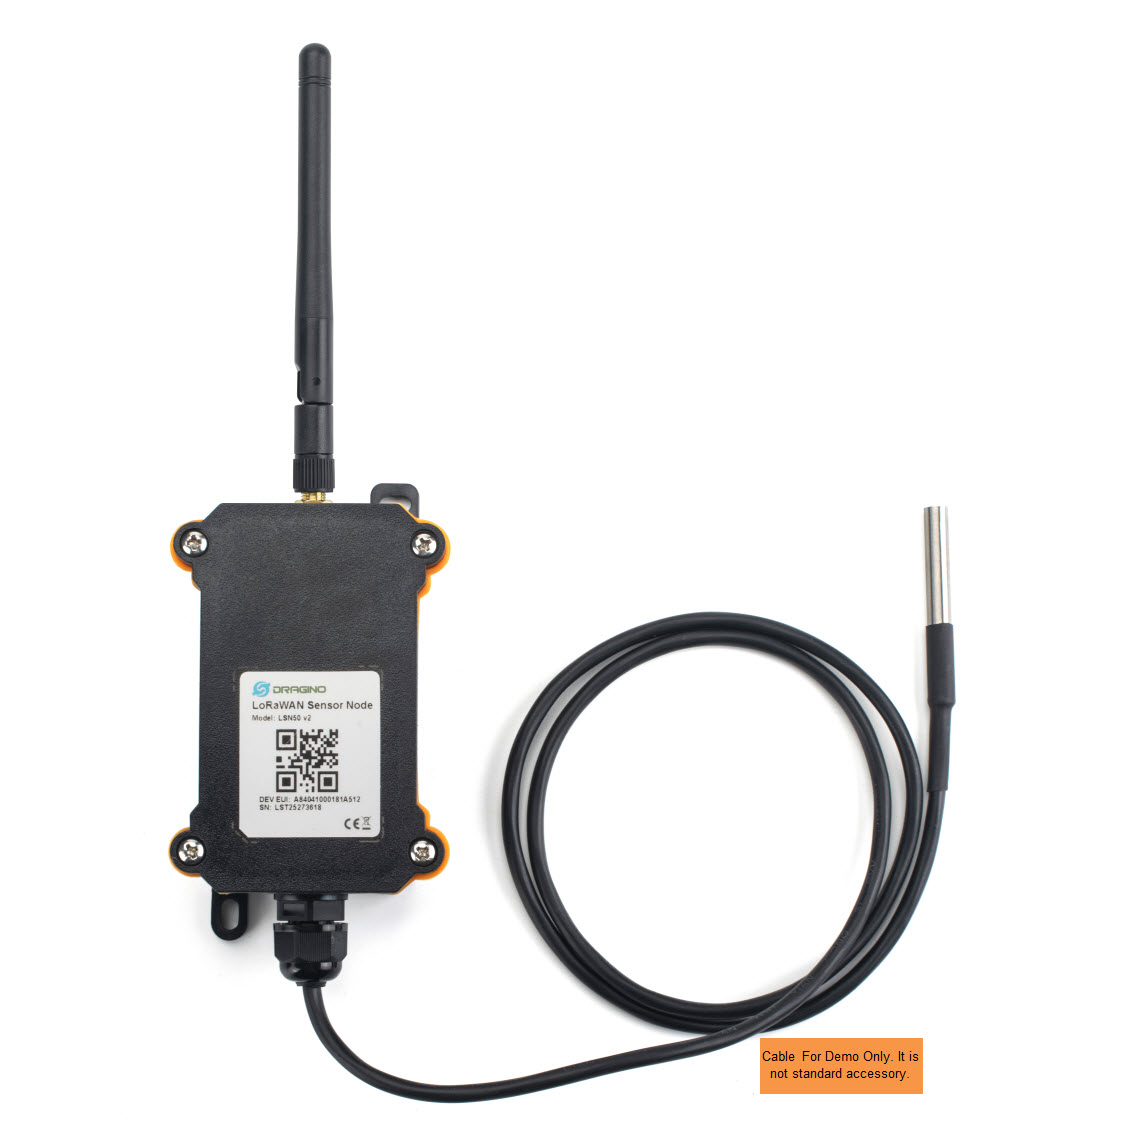 粹联科技 LSN50-V2 -- 防水远程无线 LoRa 传感器节点